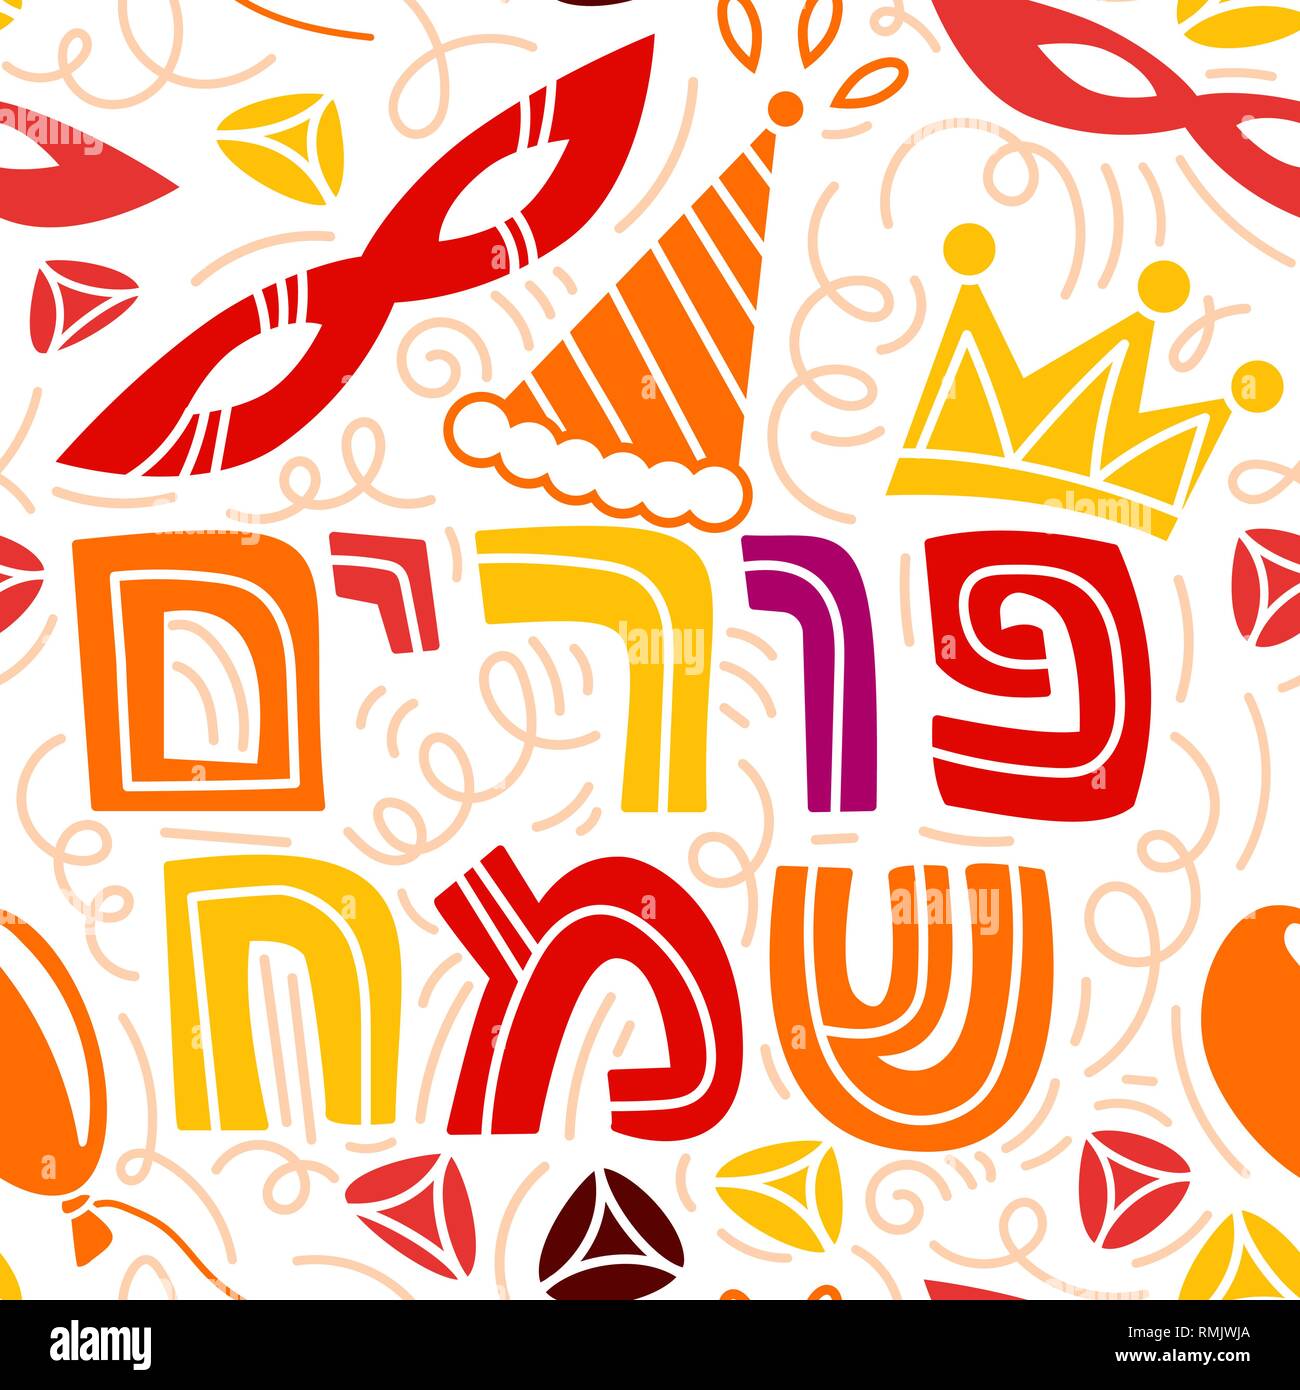 Purim nahtlose Muster mit Karneval Maske, Hüte, Krone, hamantaschen und hebräischen Text glücklich Purim. Coloful Vector Illustration in Hand gezeichnet Doodles stiyle. Stock Vektor